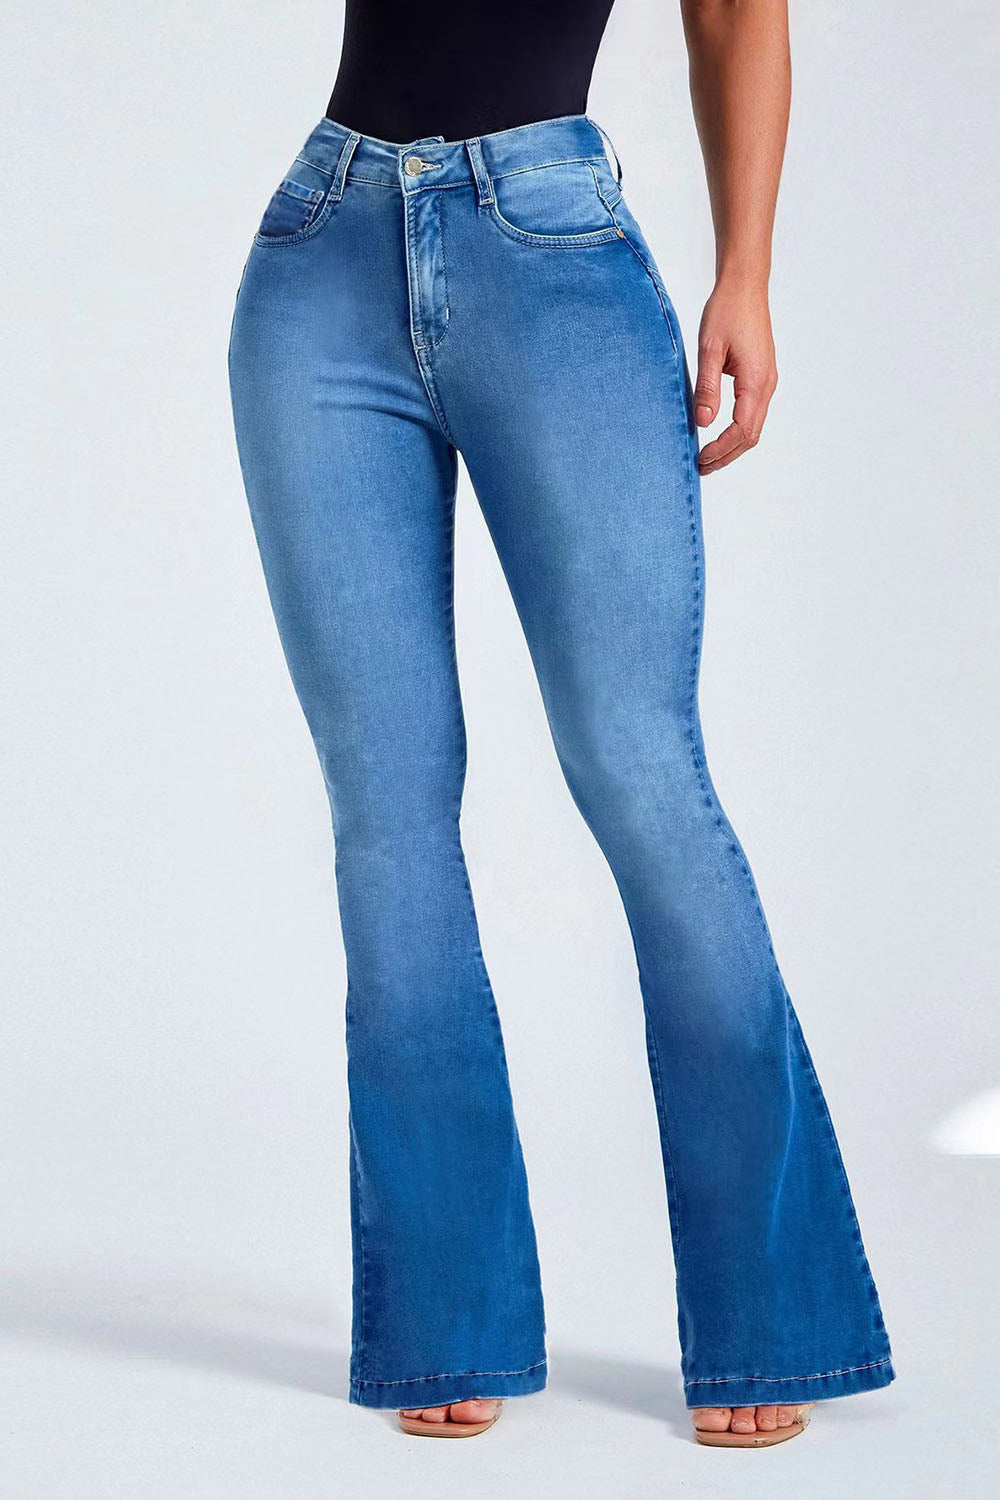 Retro Buttoned Long Jeans - Light / S - Bottoms - Pants - 6 - 2024